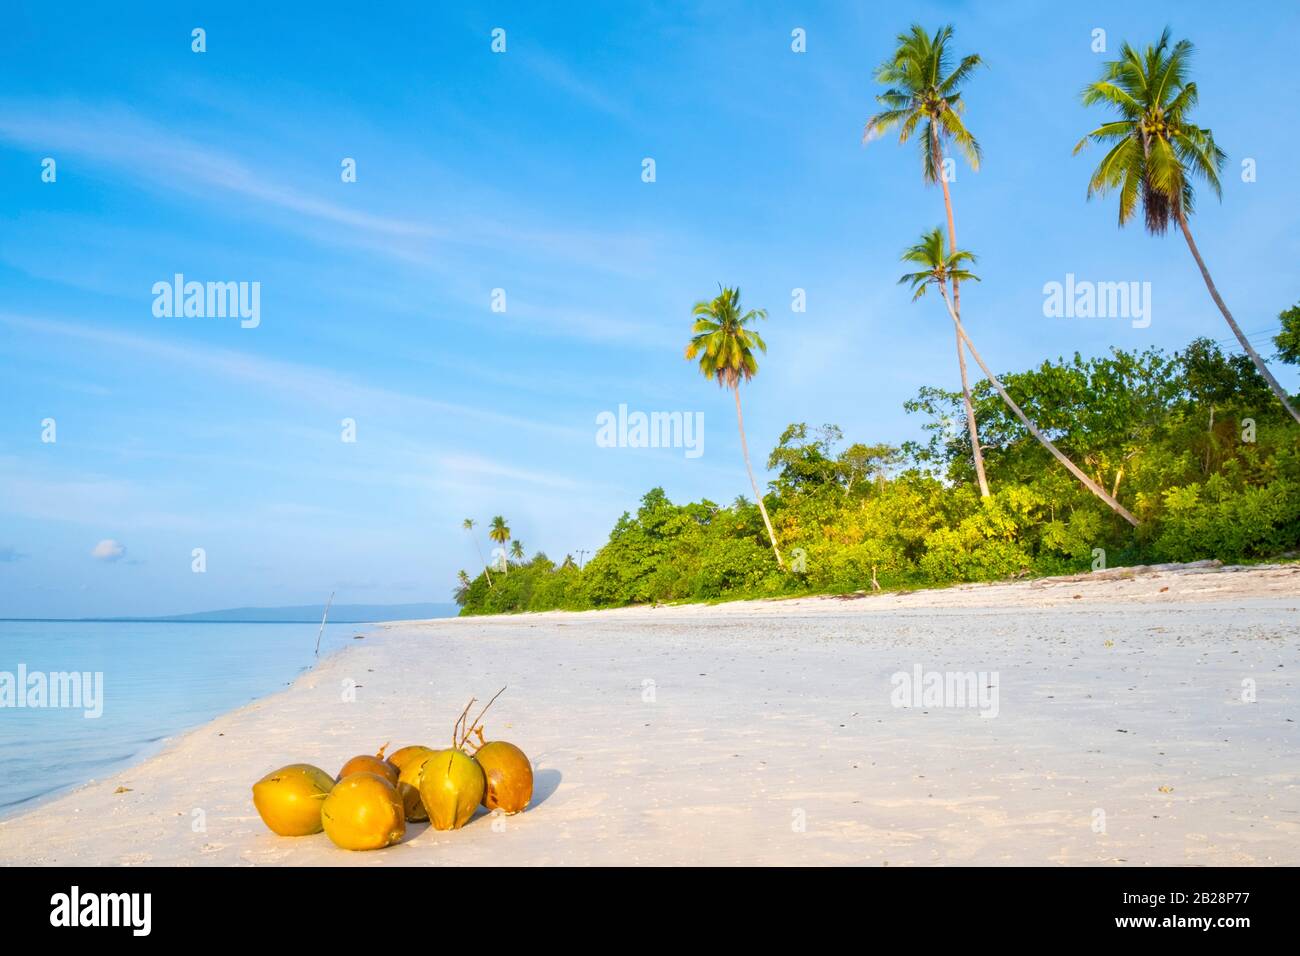 Asie, Indonésie, îles Spice, Seram, Pulau Manawoka. Une plage vierge de l'île à Maluku / Raja Ampat Banque D'Images